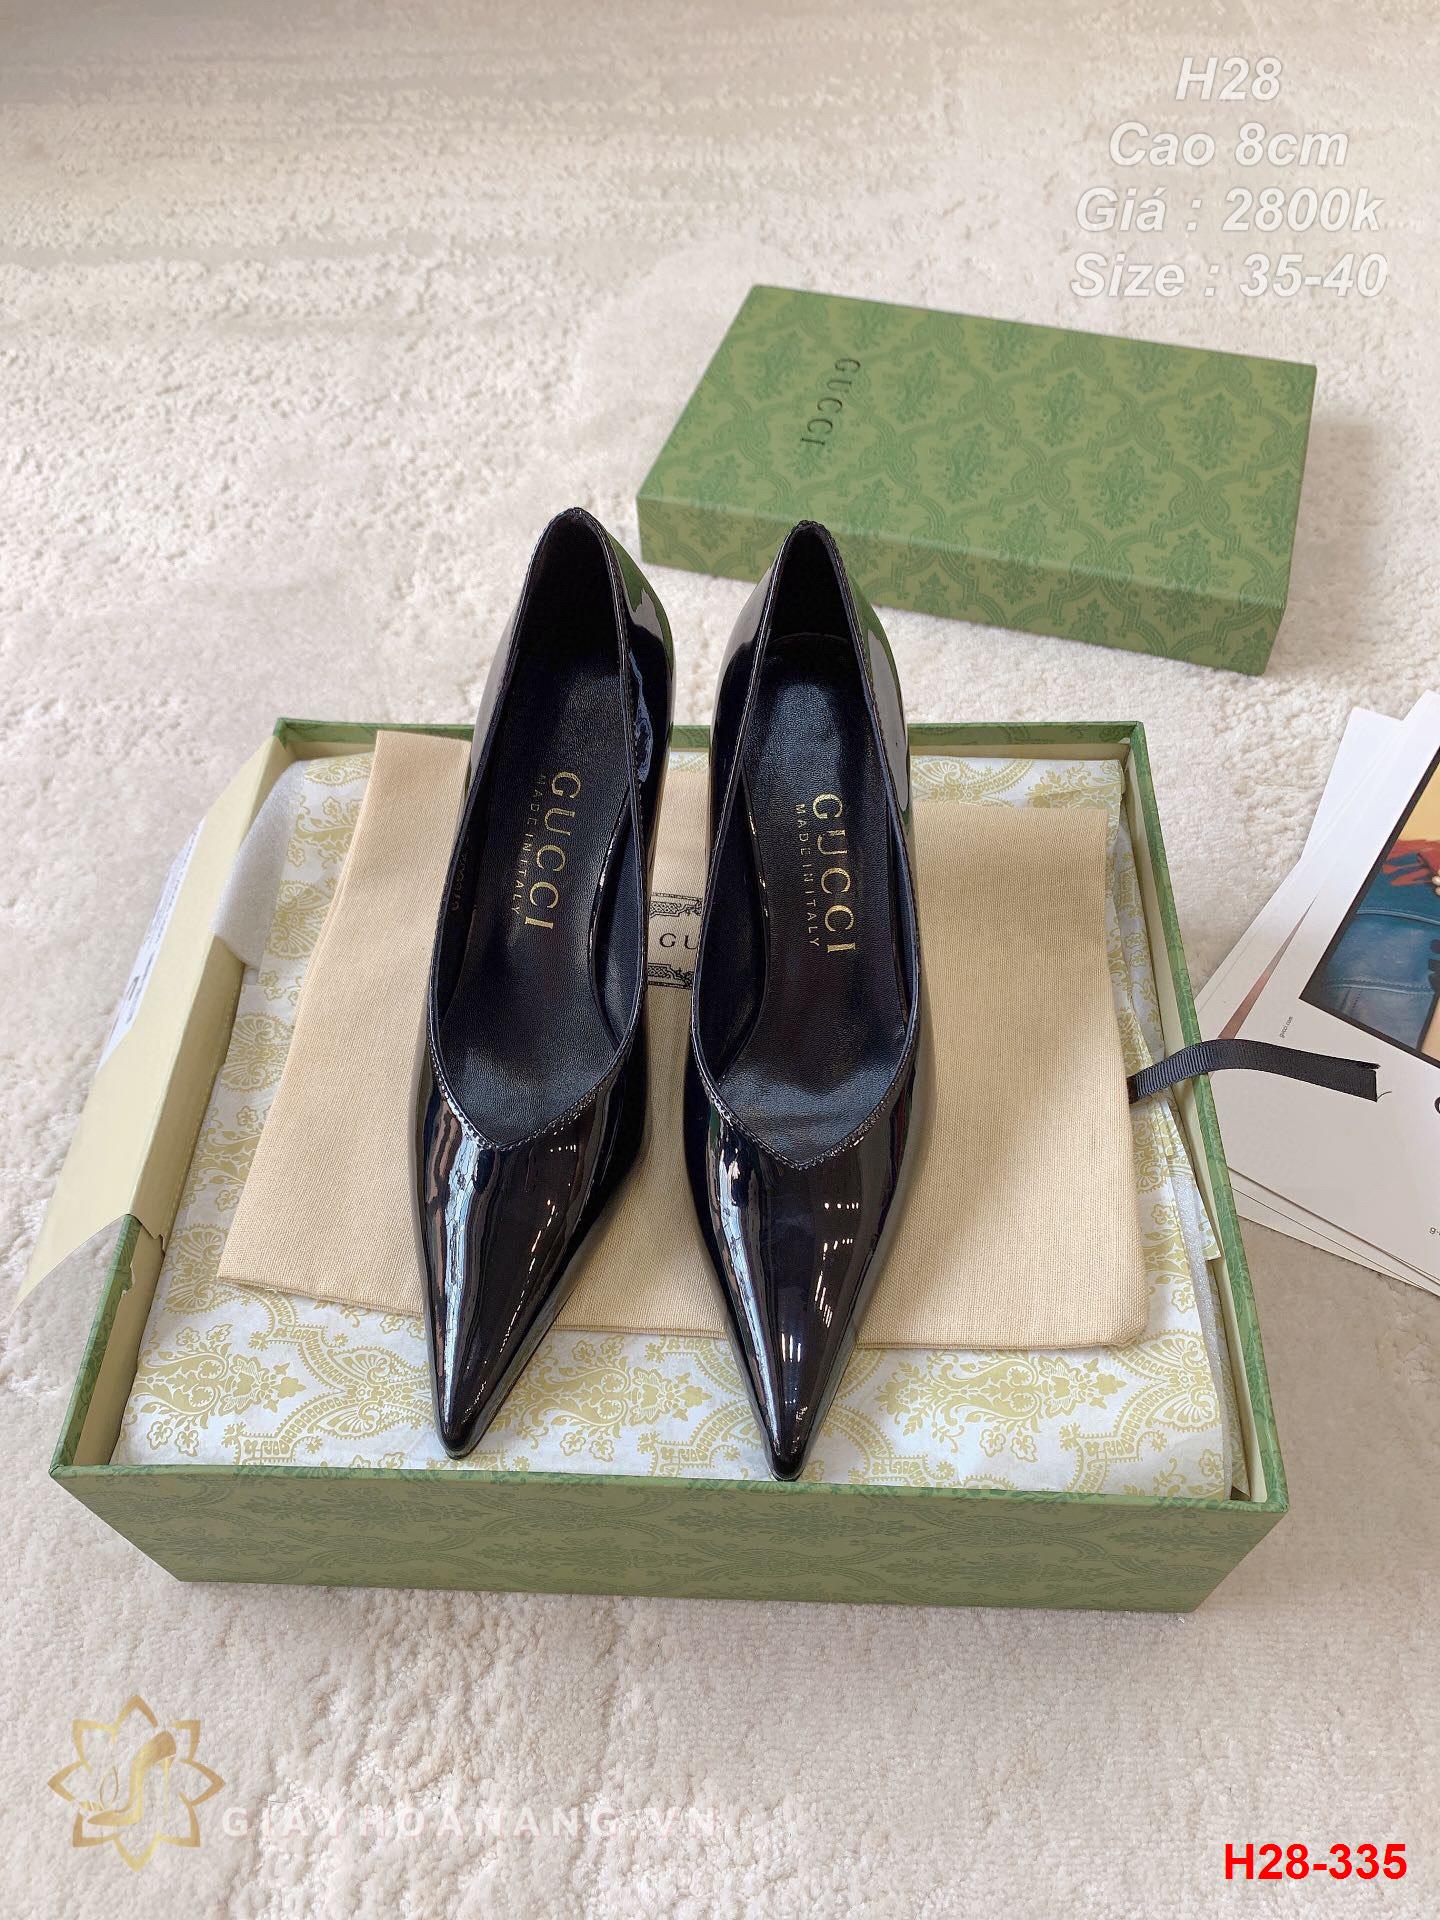 H28-335 Gucci giày cao gót 8cm siêu cấp